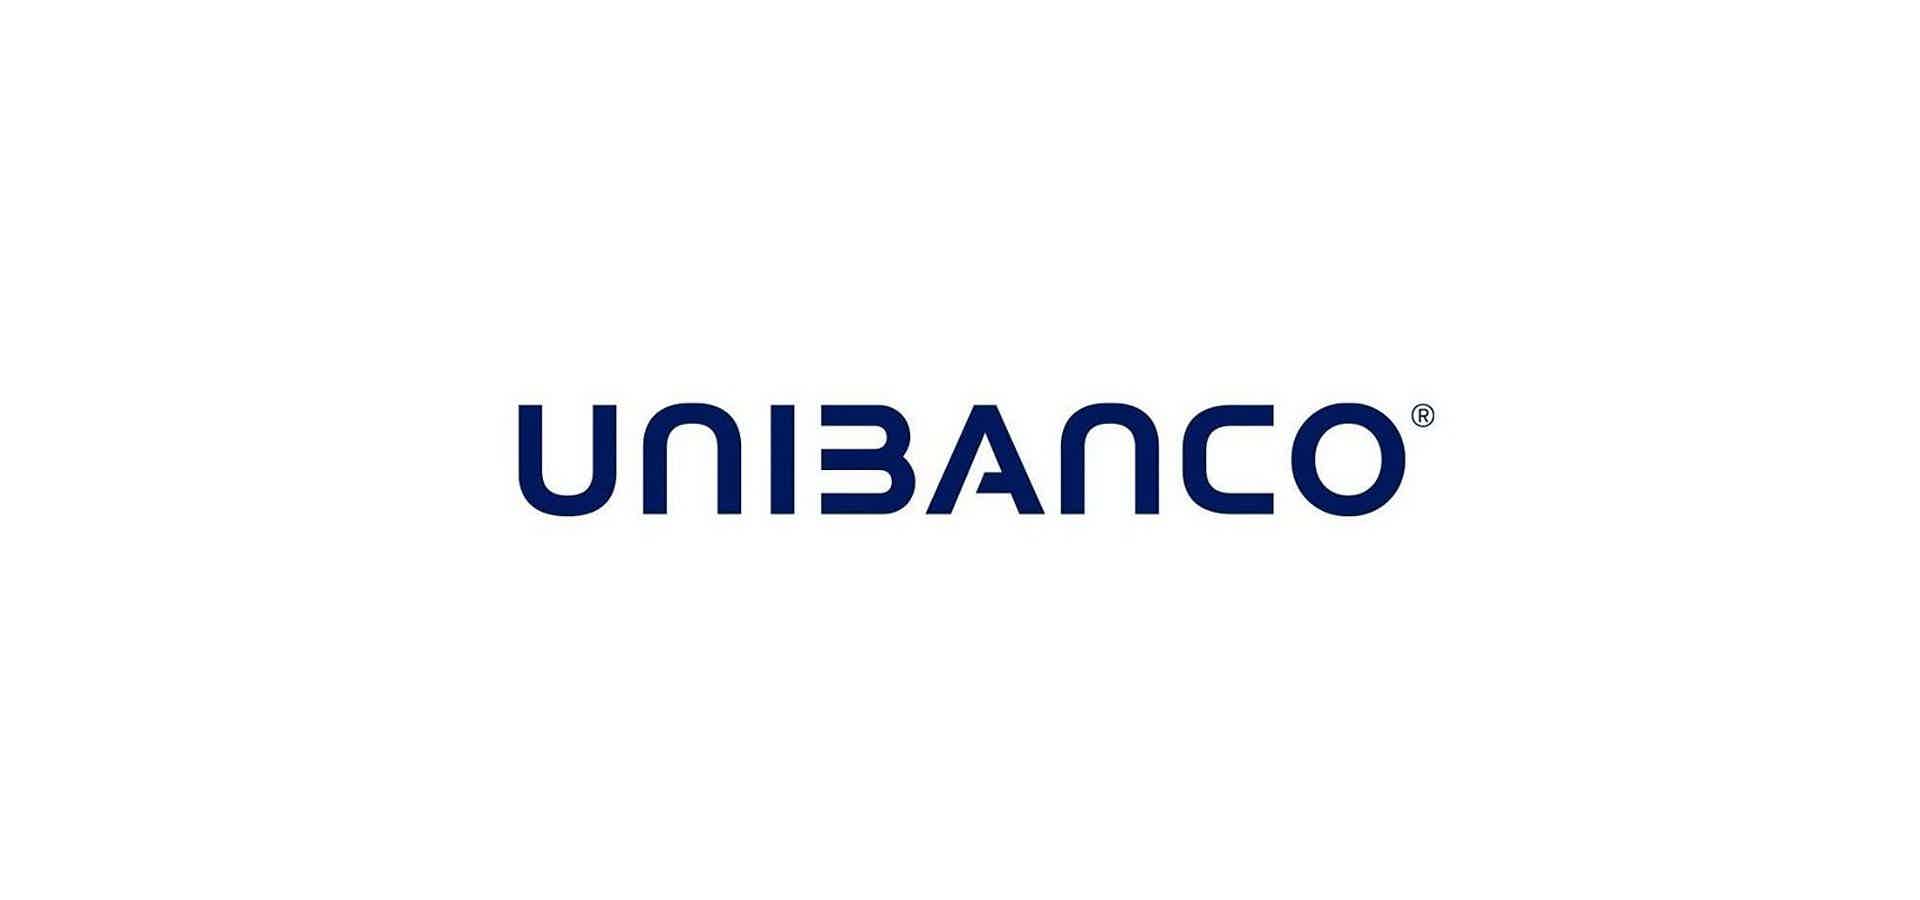 Mas, afinal, quais as características do cartão de crédito Unibanco Atitude? Fonte: Unibanco.